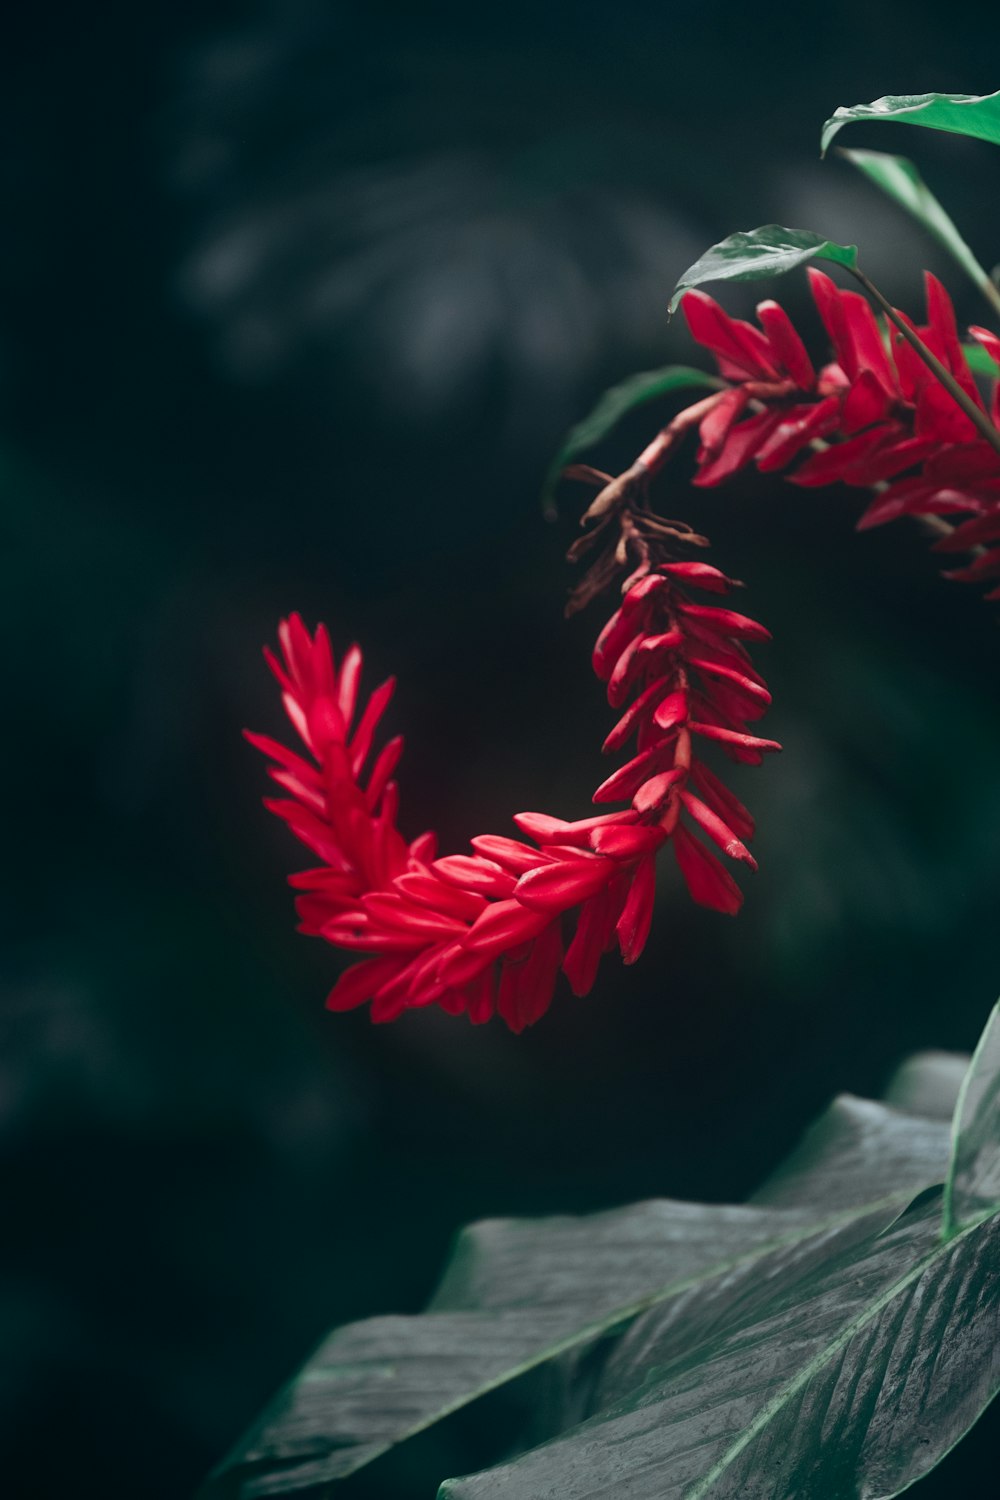 red and white flower in tilt shift lens